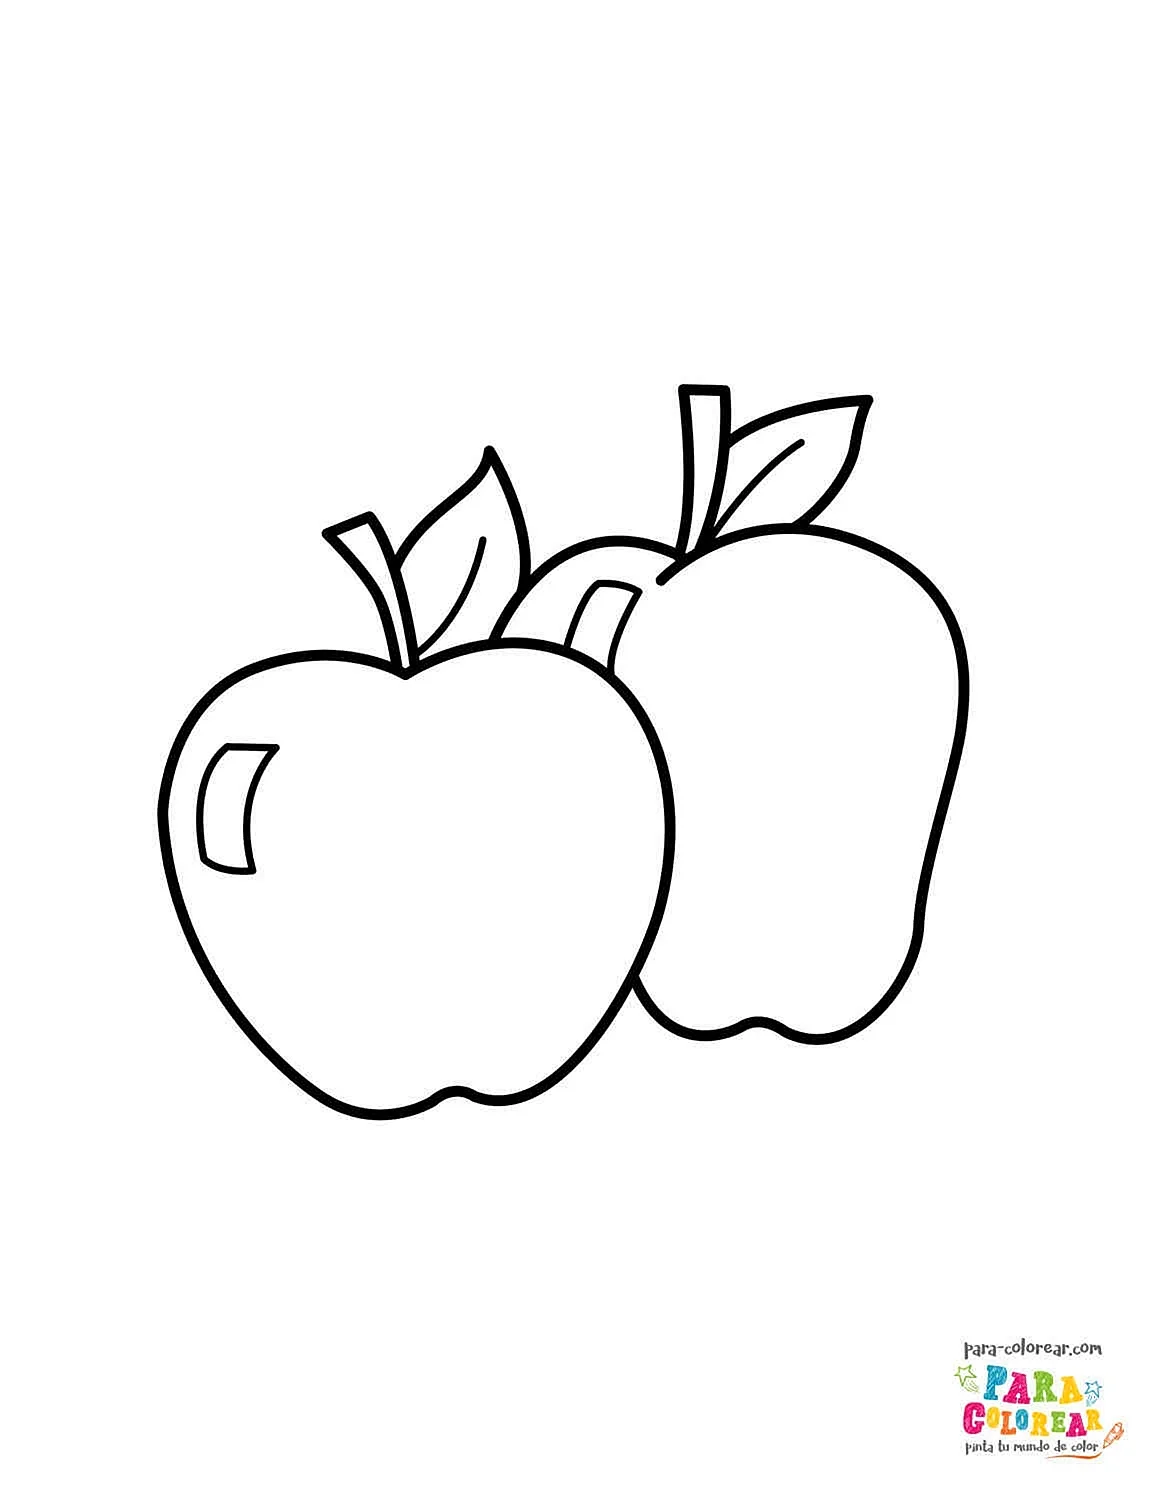 Раскраска яблоко для детей в детском саду